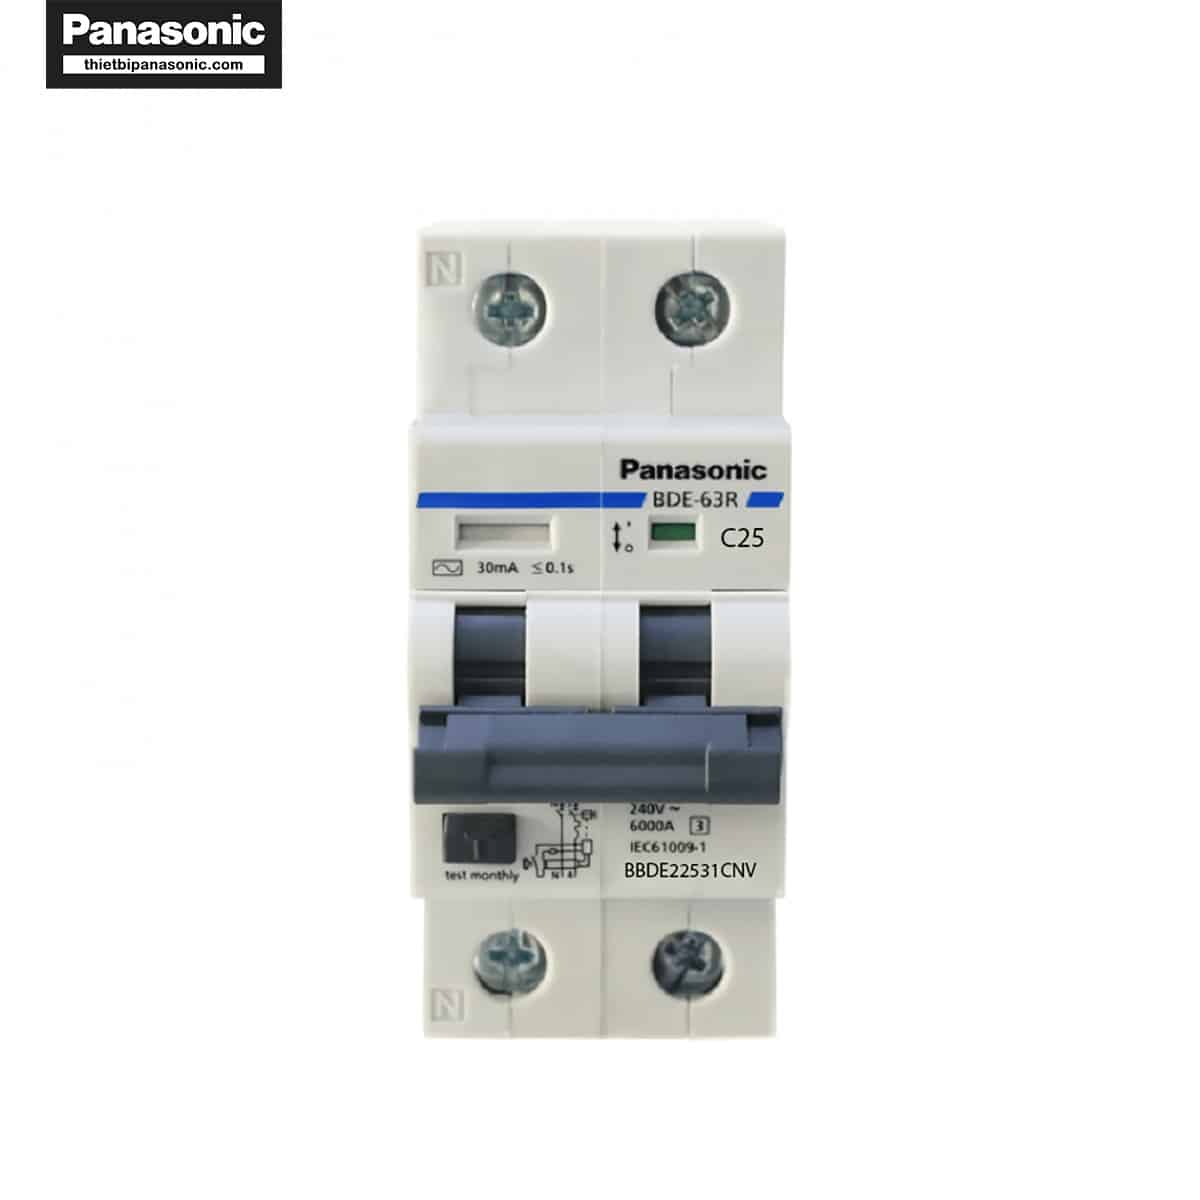 Mặt trước của RCBO Panasonic 25A 2P 30mA BBDE22531CNV với đầy đủ các thông số kỹ thuật quan trọng